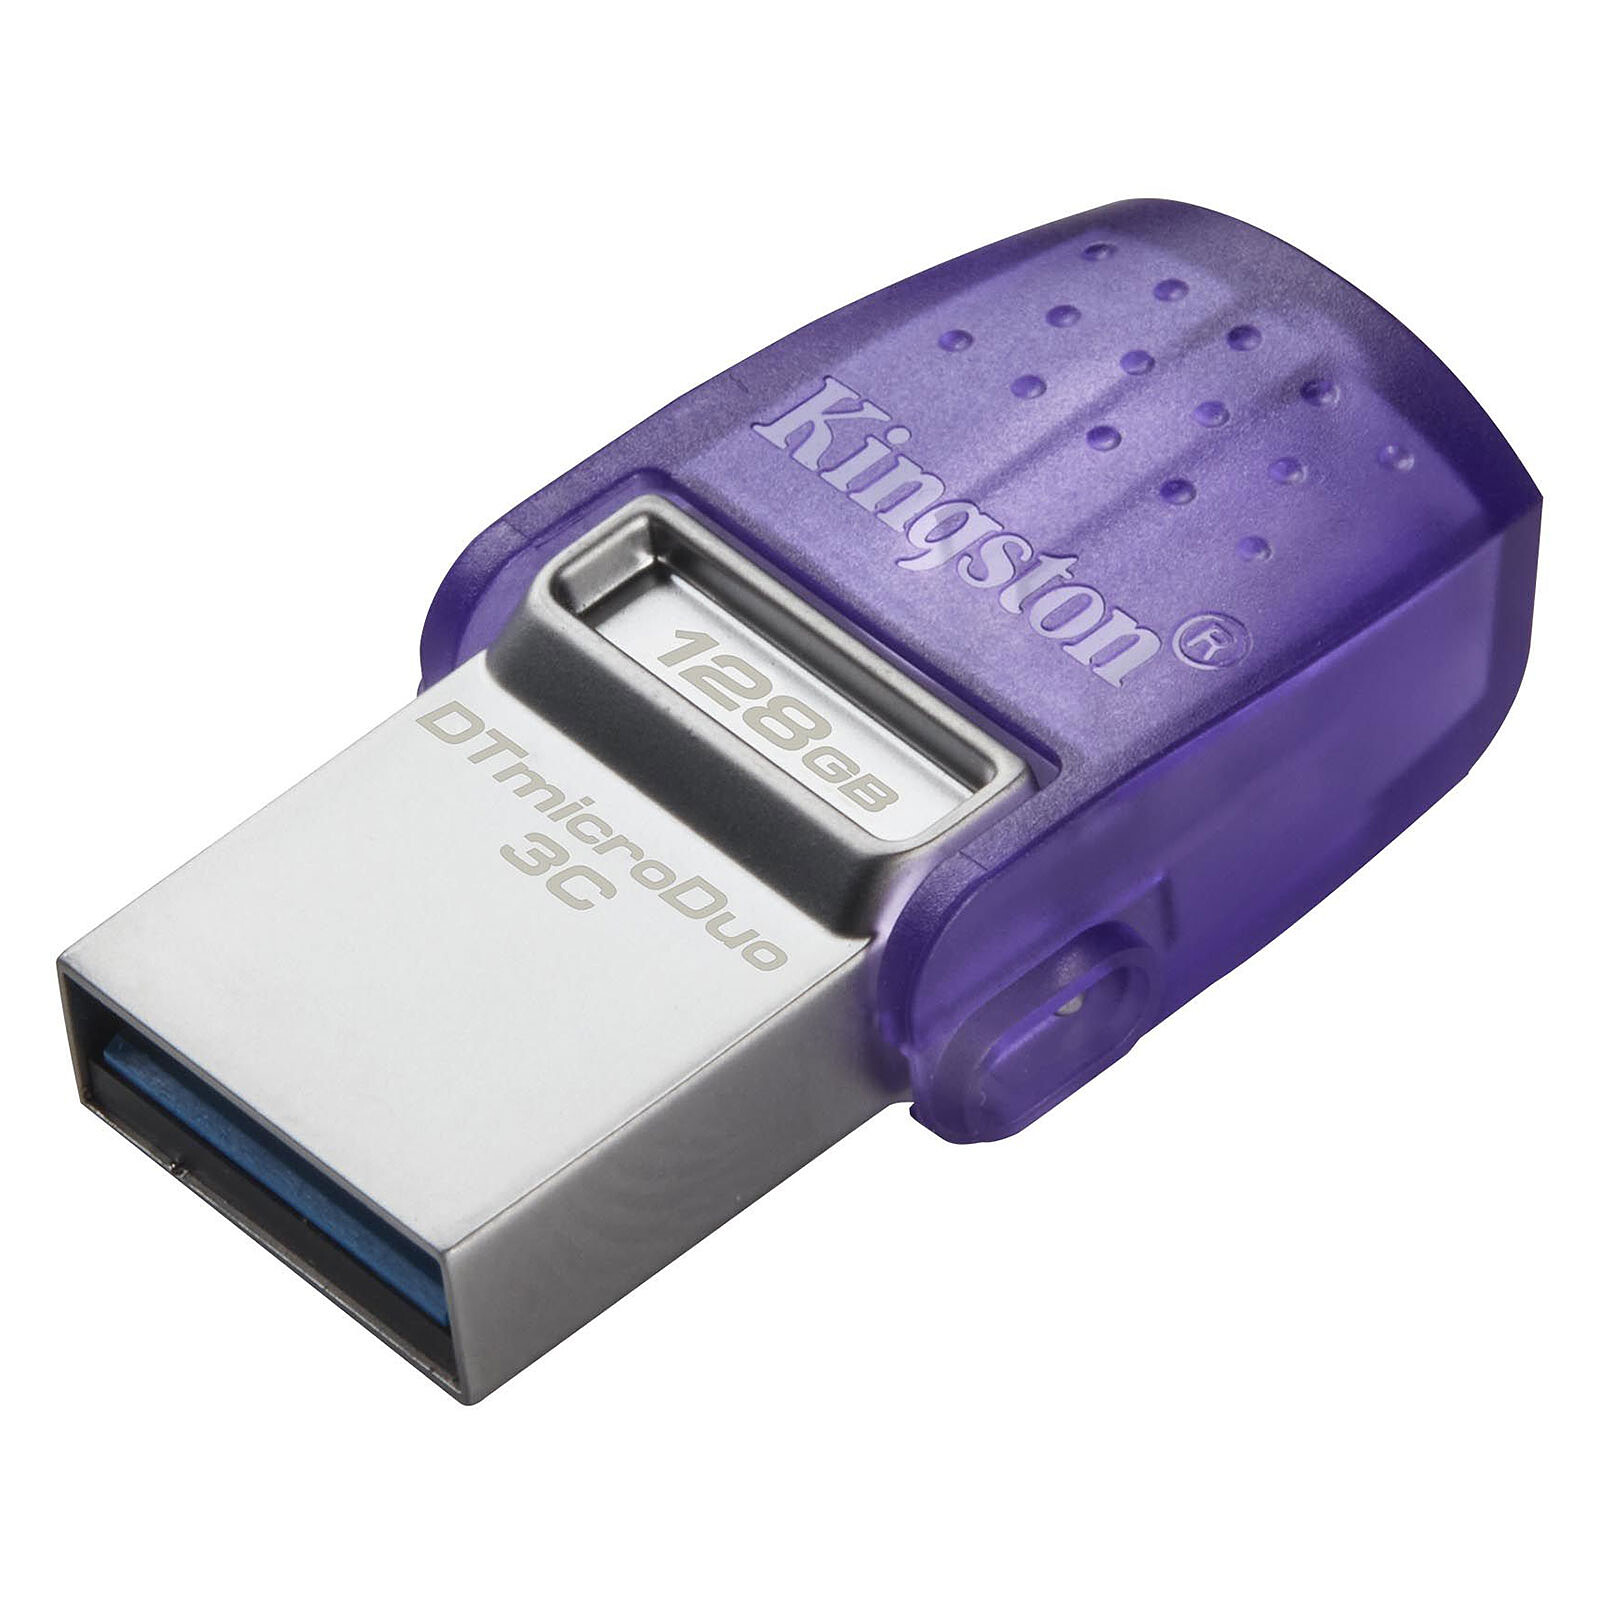 SanDisk Ultra Eco 128 Go - Clé USB - LDLC